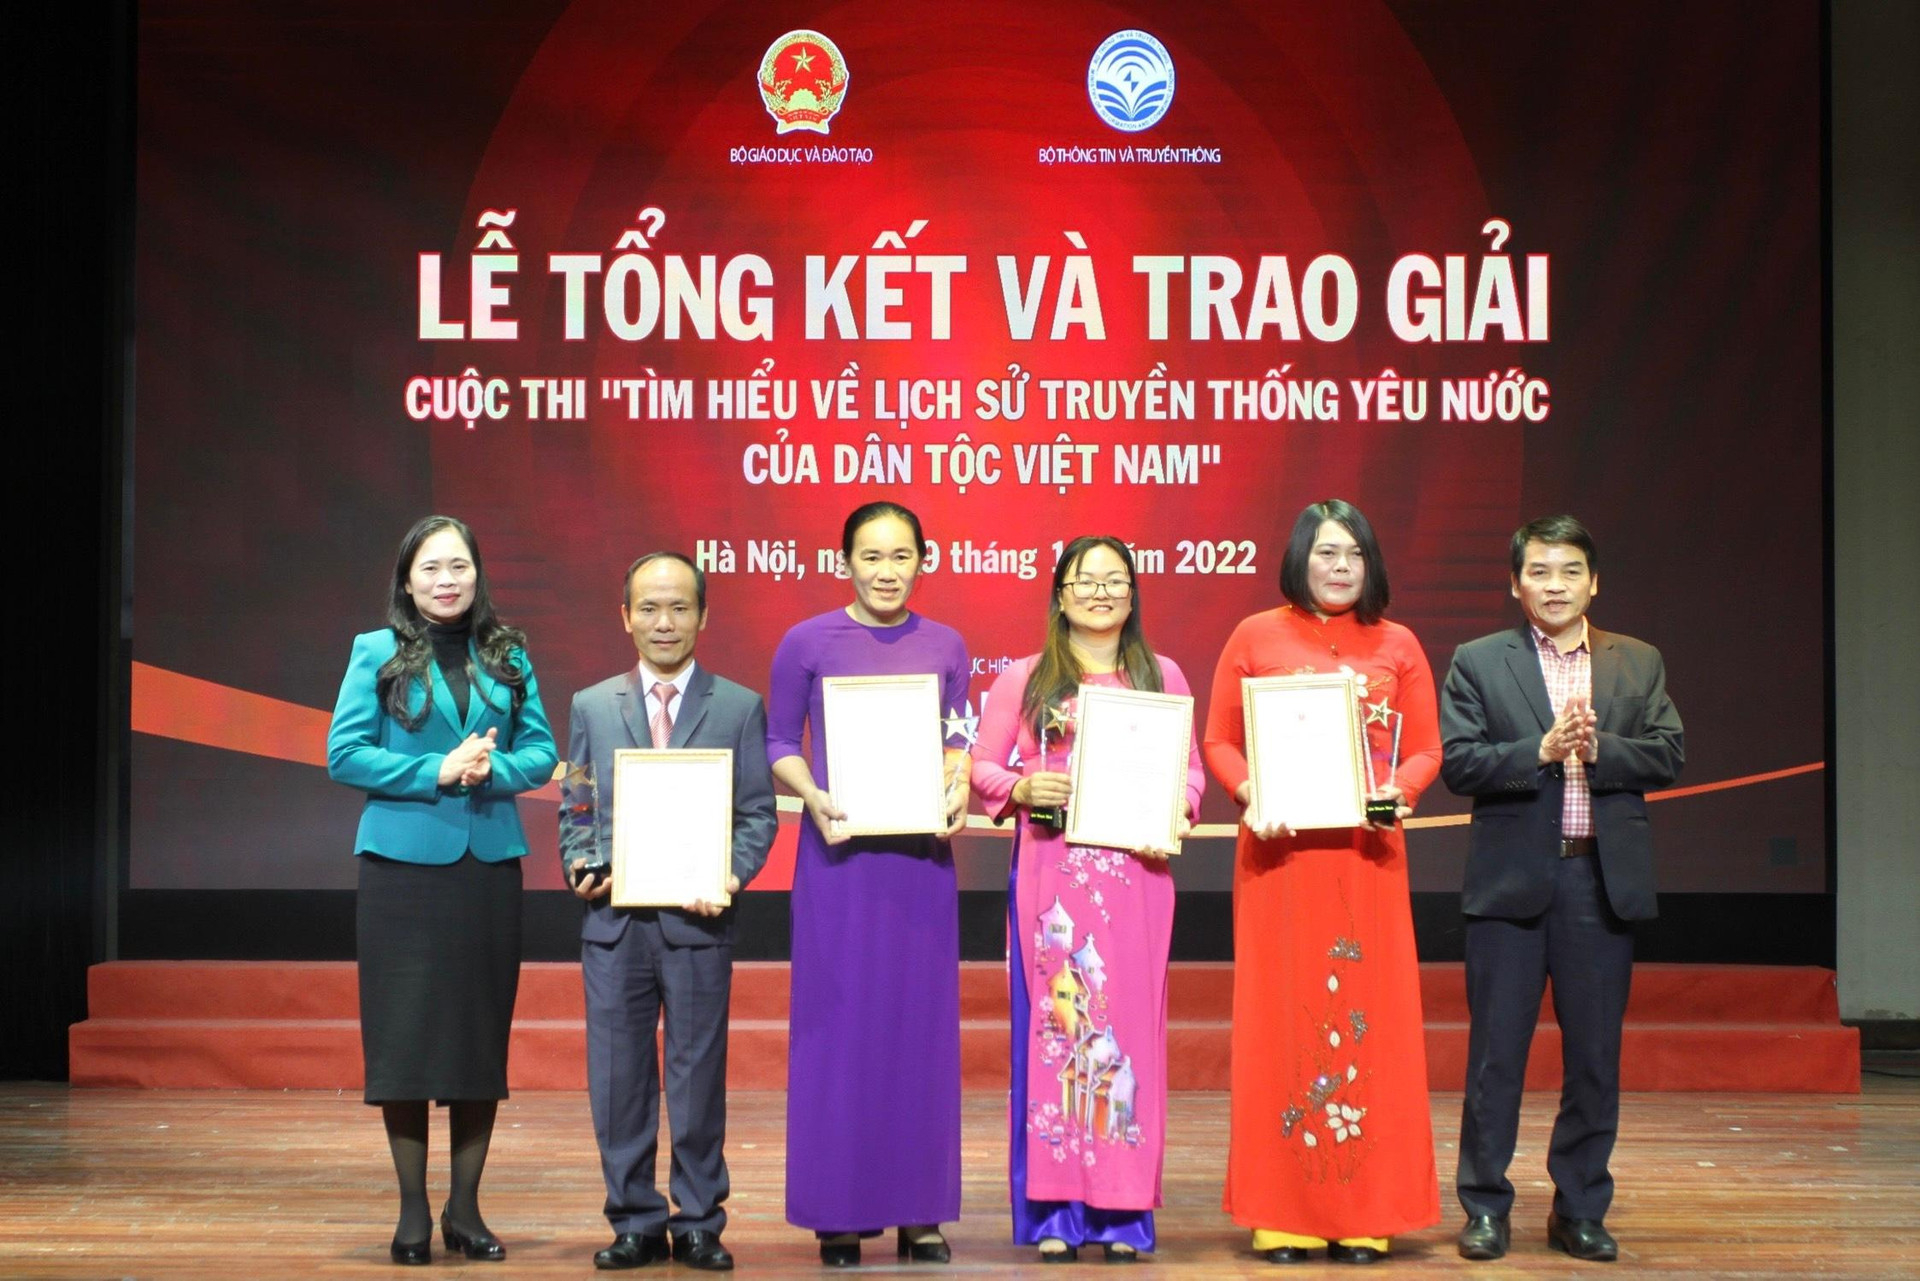 Trao giải cuộc thi Tìm hiểu lịch sử truyền thống yêu nước của dân tộc Việt Nam ảnh 5